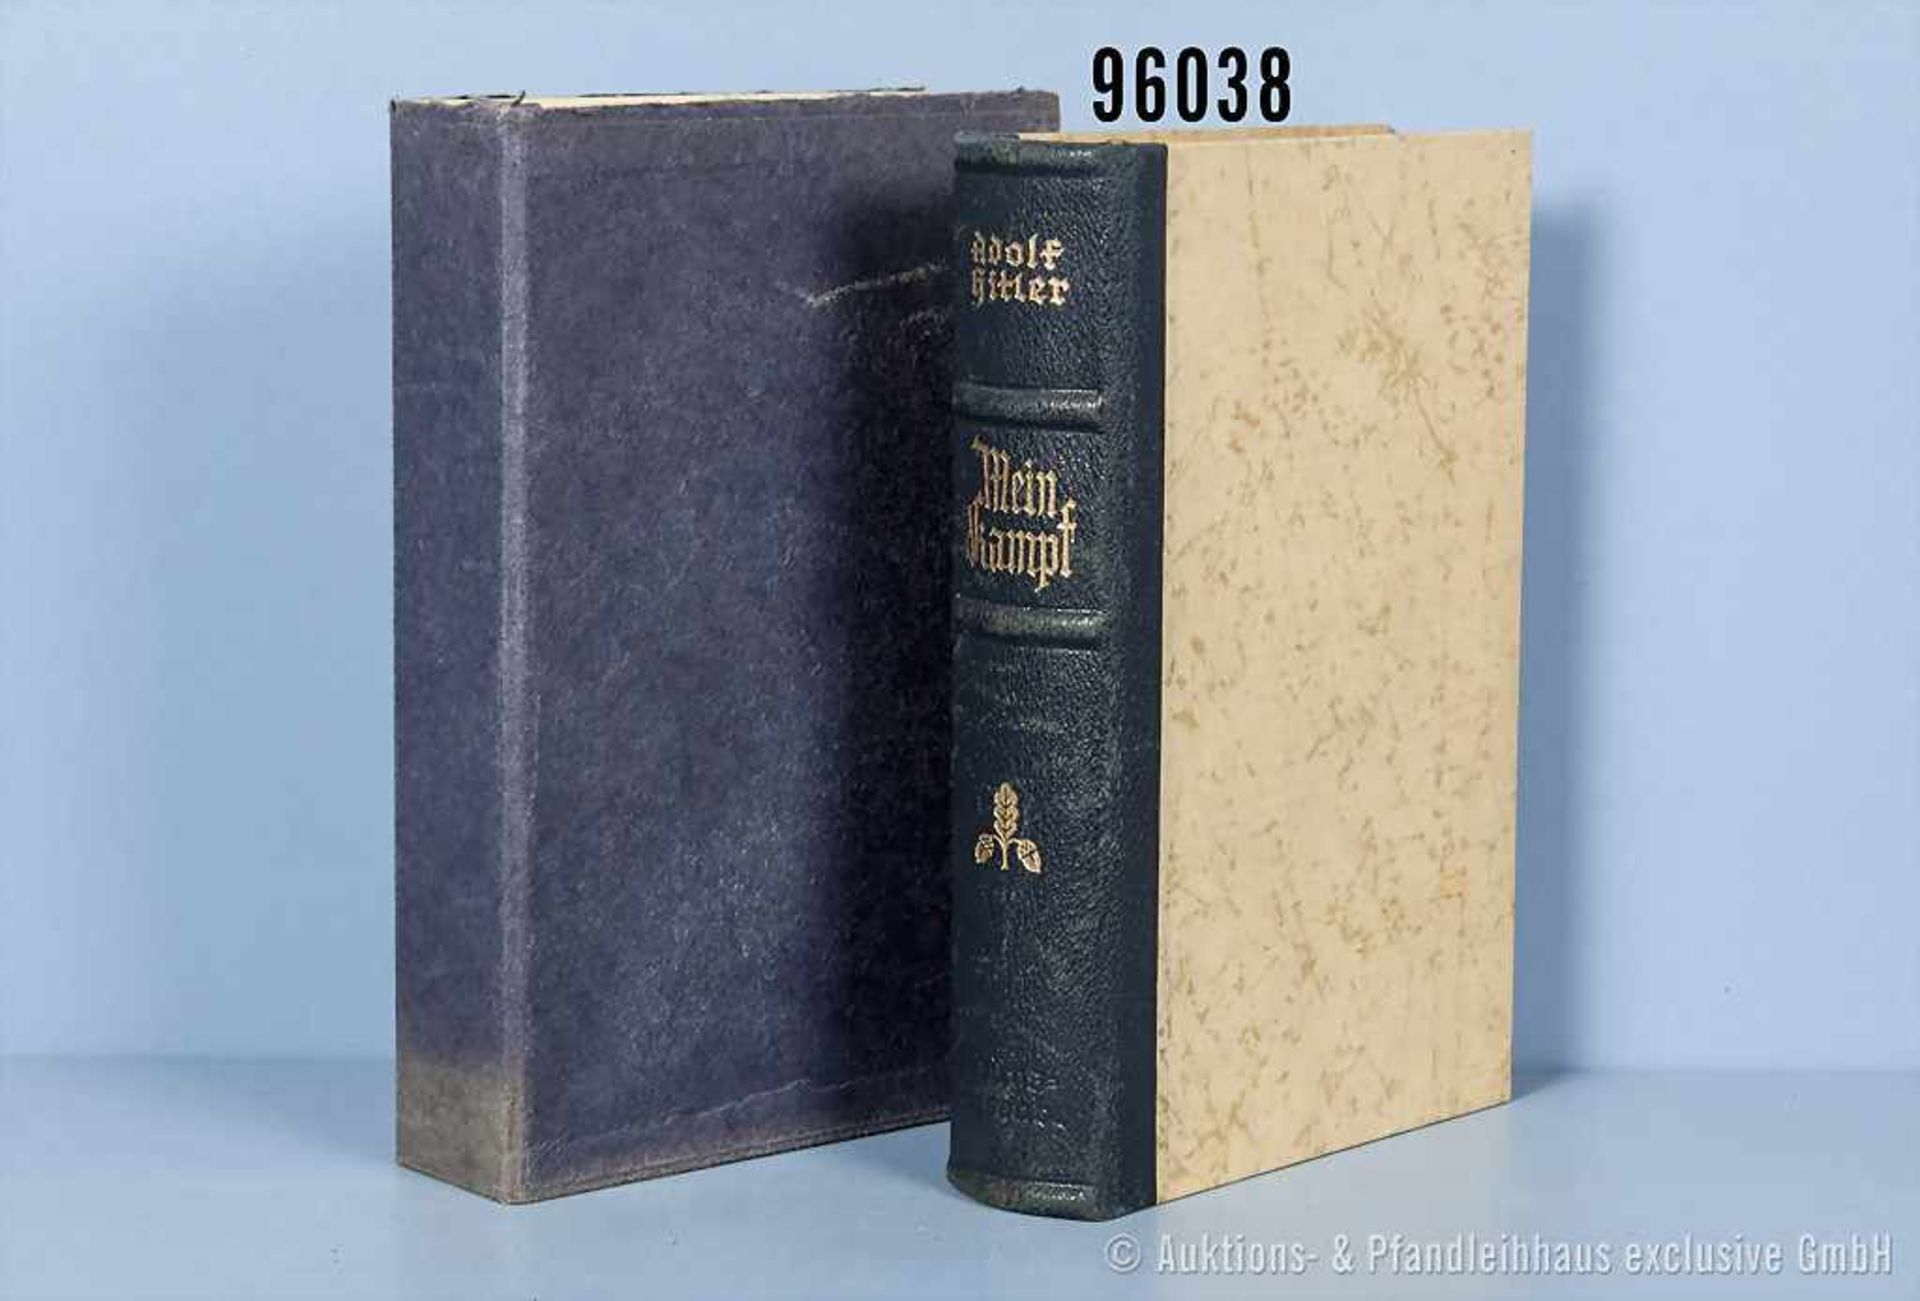 Adolf Hitler "Mein Kampf", Halblederausf. von 1941 in beschädigtem Schuber, guter Zustand, teilweise